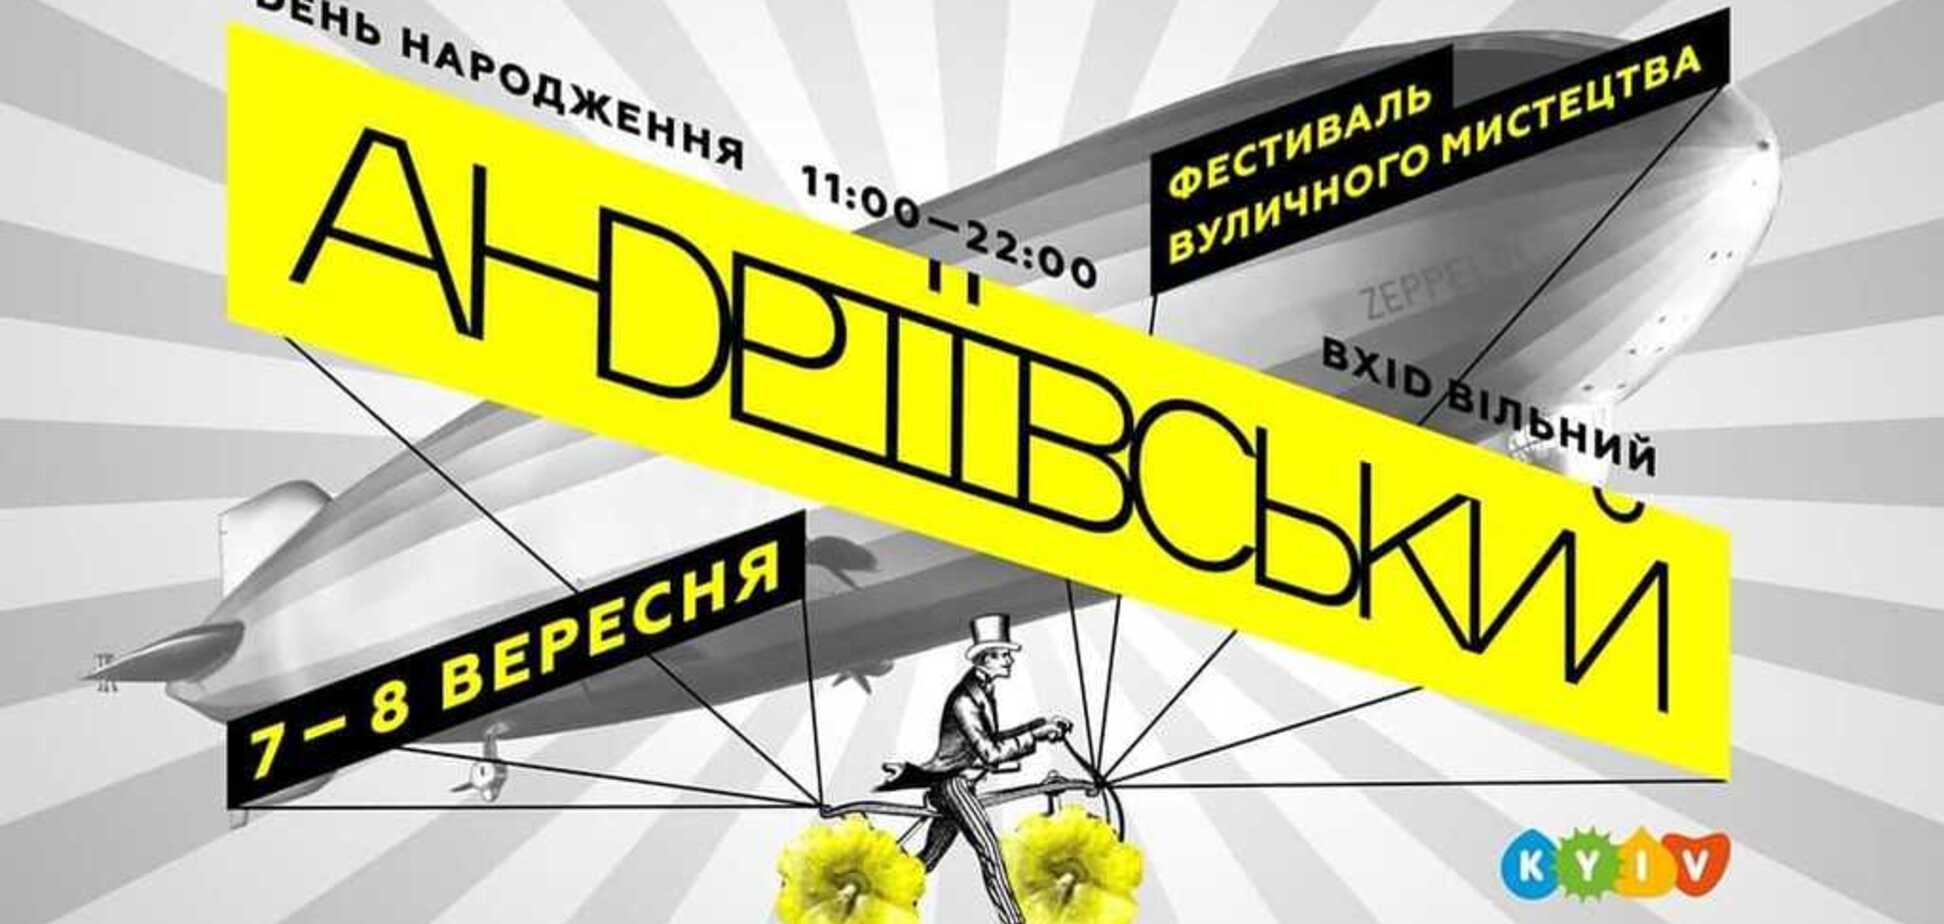 В Киеве отпразднуют День рождения Андреевского спуска